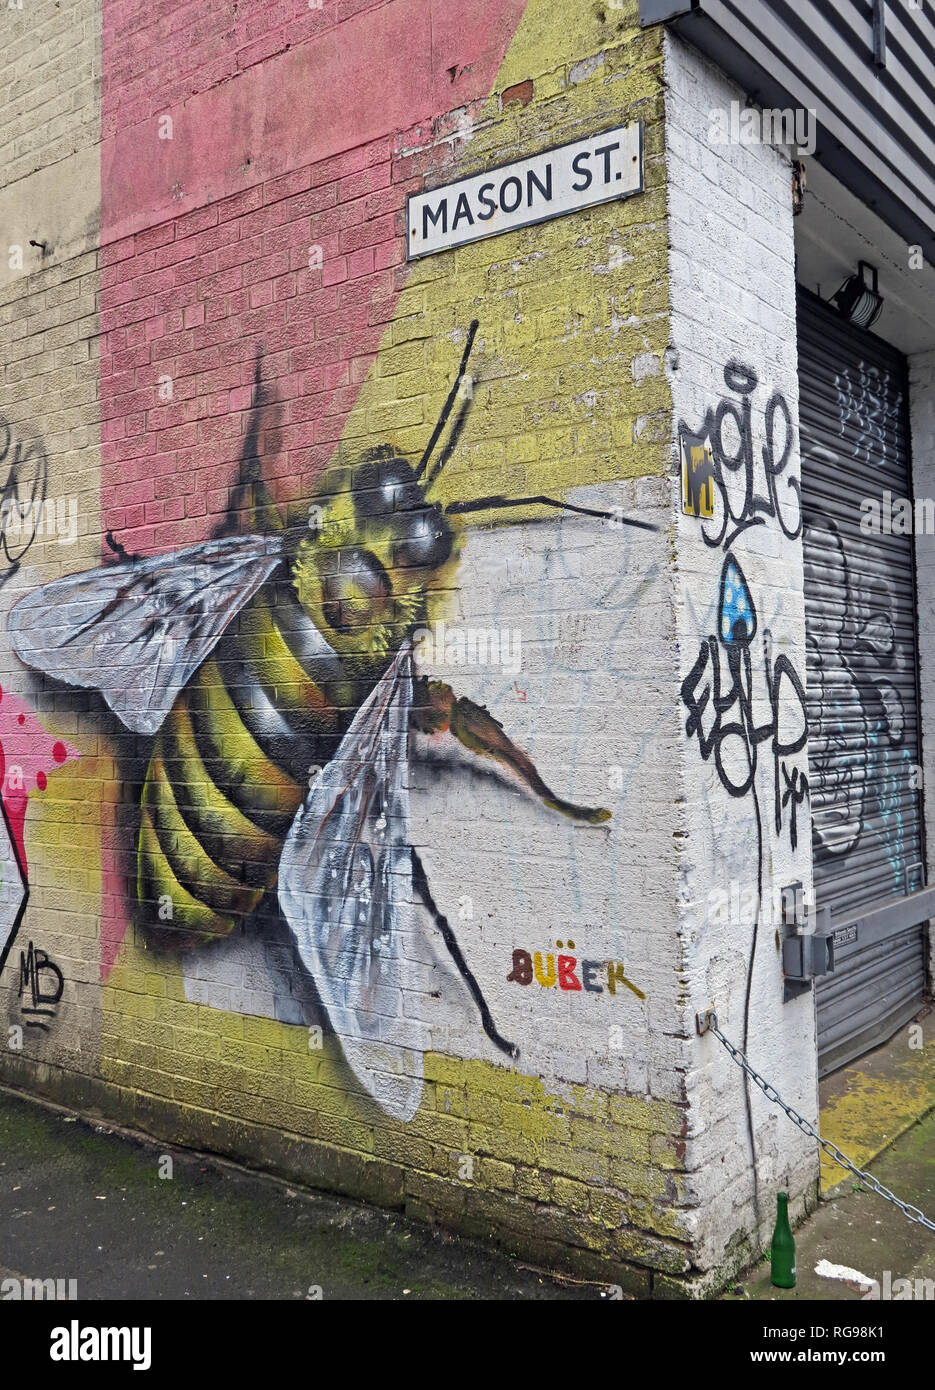 Manchester Bee sul muro a Mason St, Northern Quarter, North West England, Regno Unito, M4 5JU Foto Stock